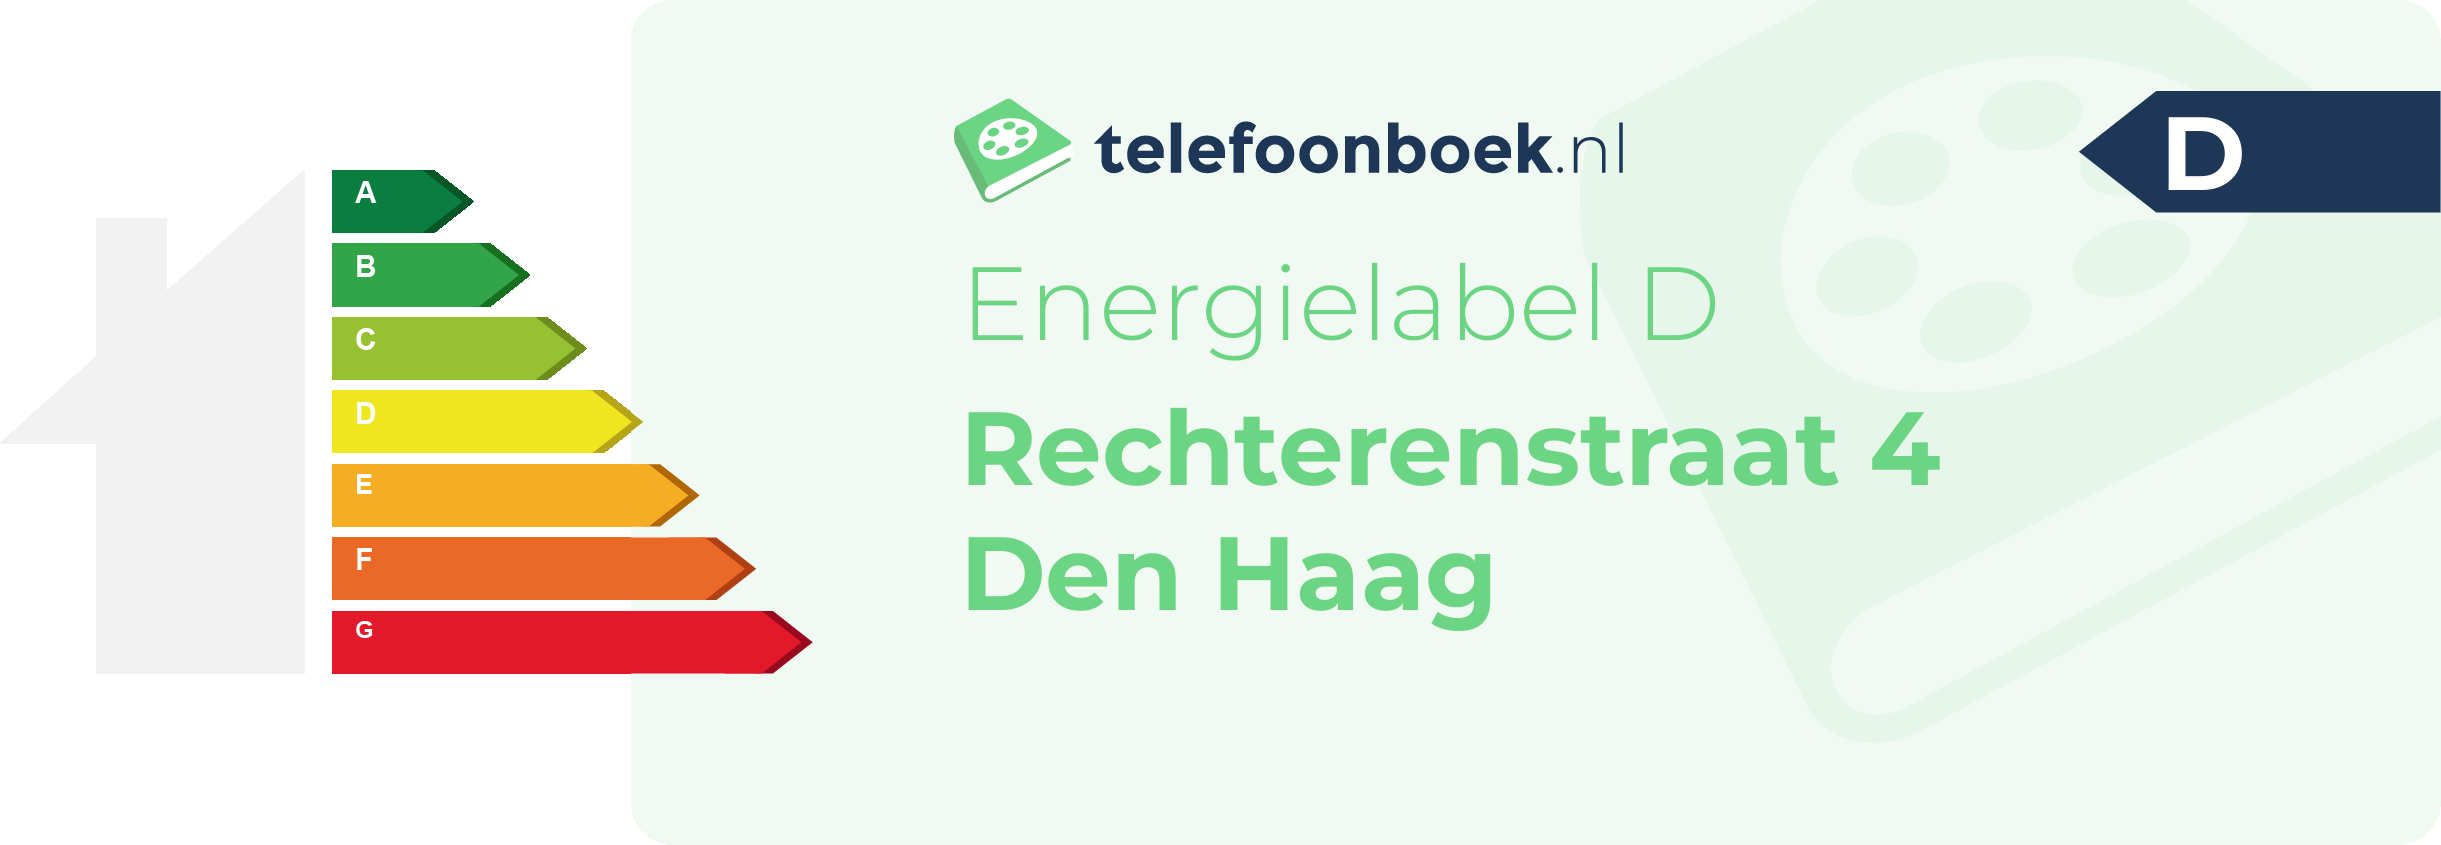 Energielabel Rechterenstraat 4 Den Haag